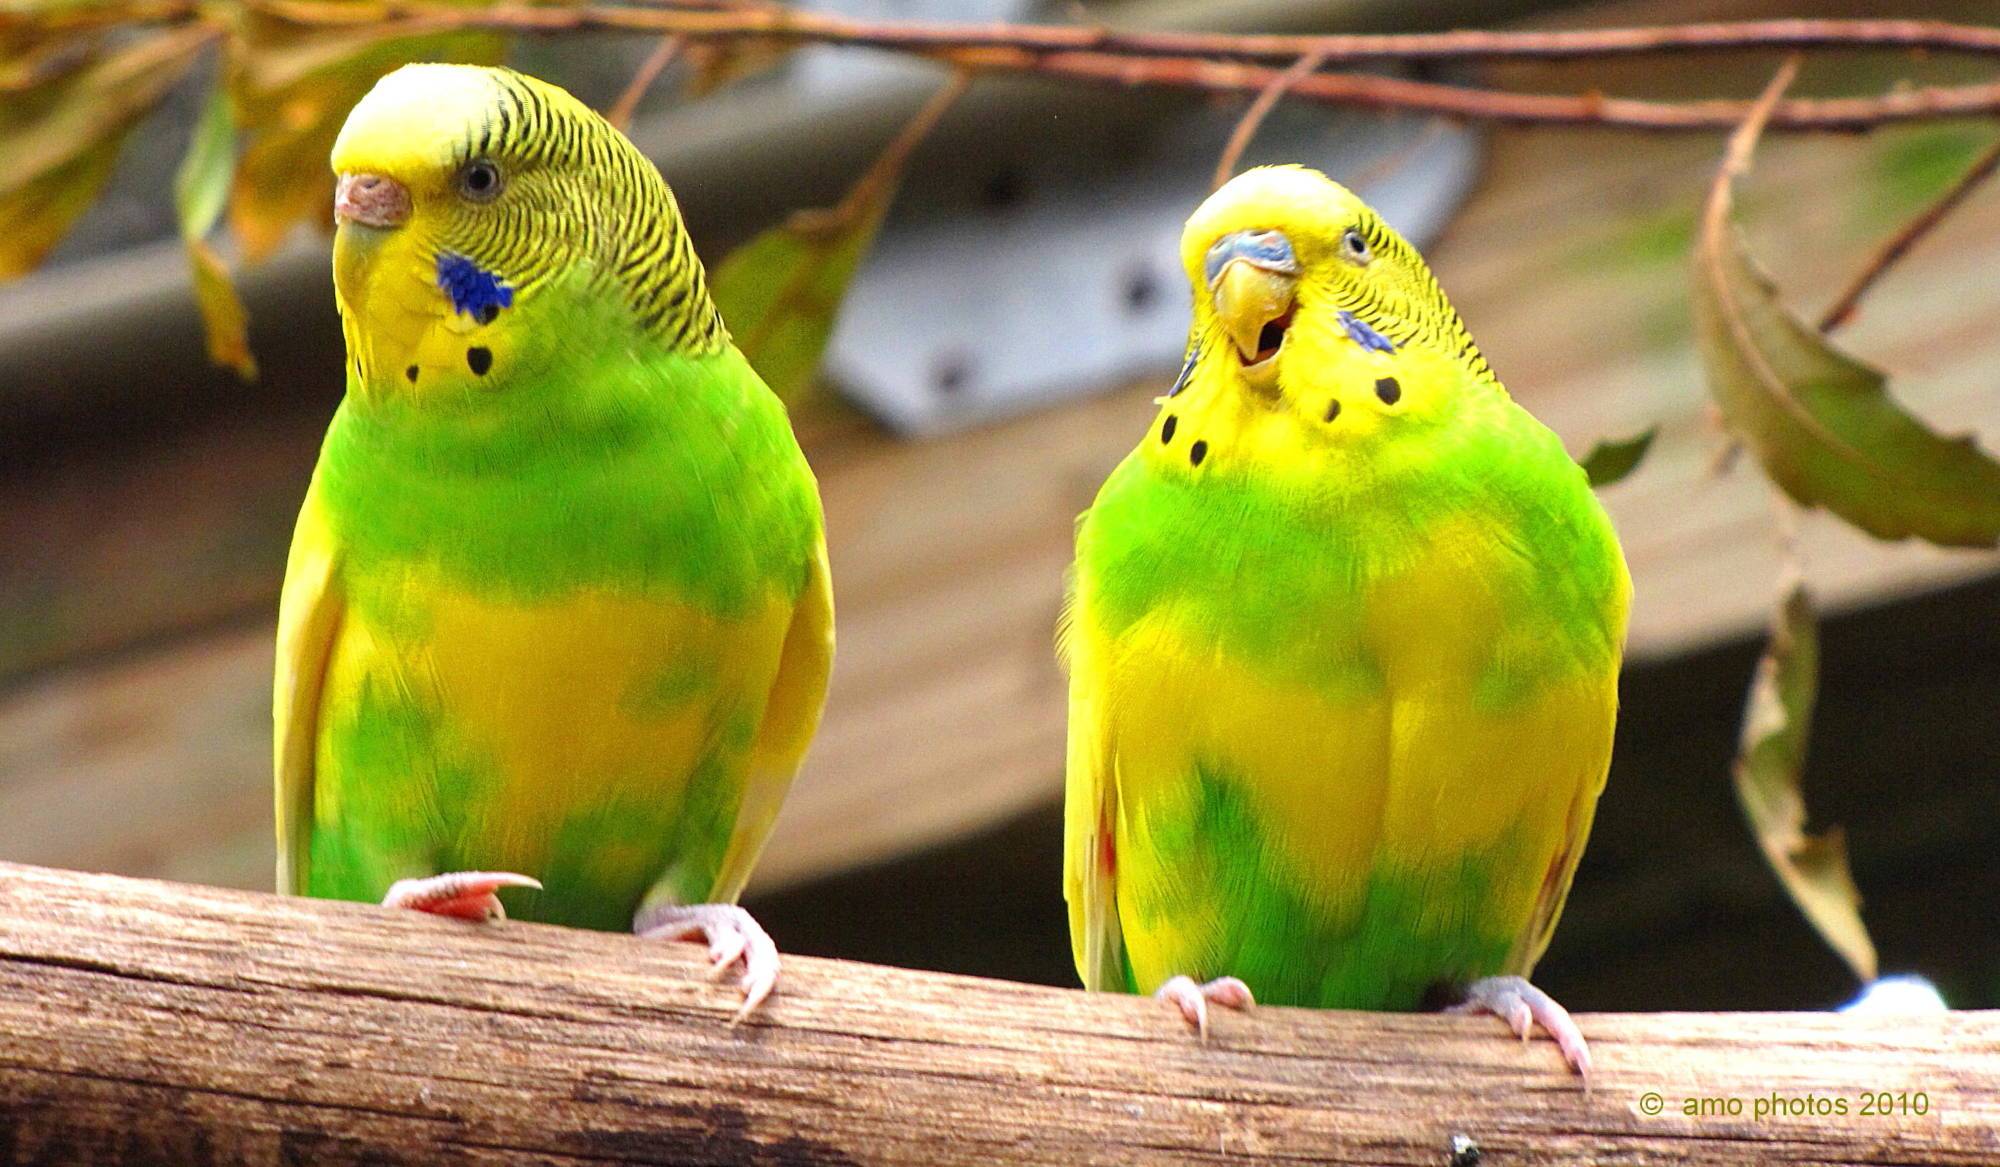 Как определить пол волнистого попугая – признаки полового различия и возраста